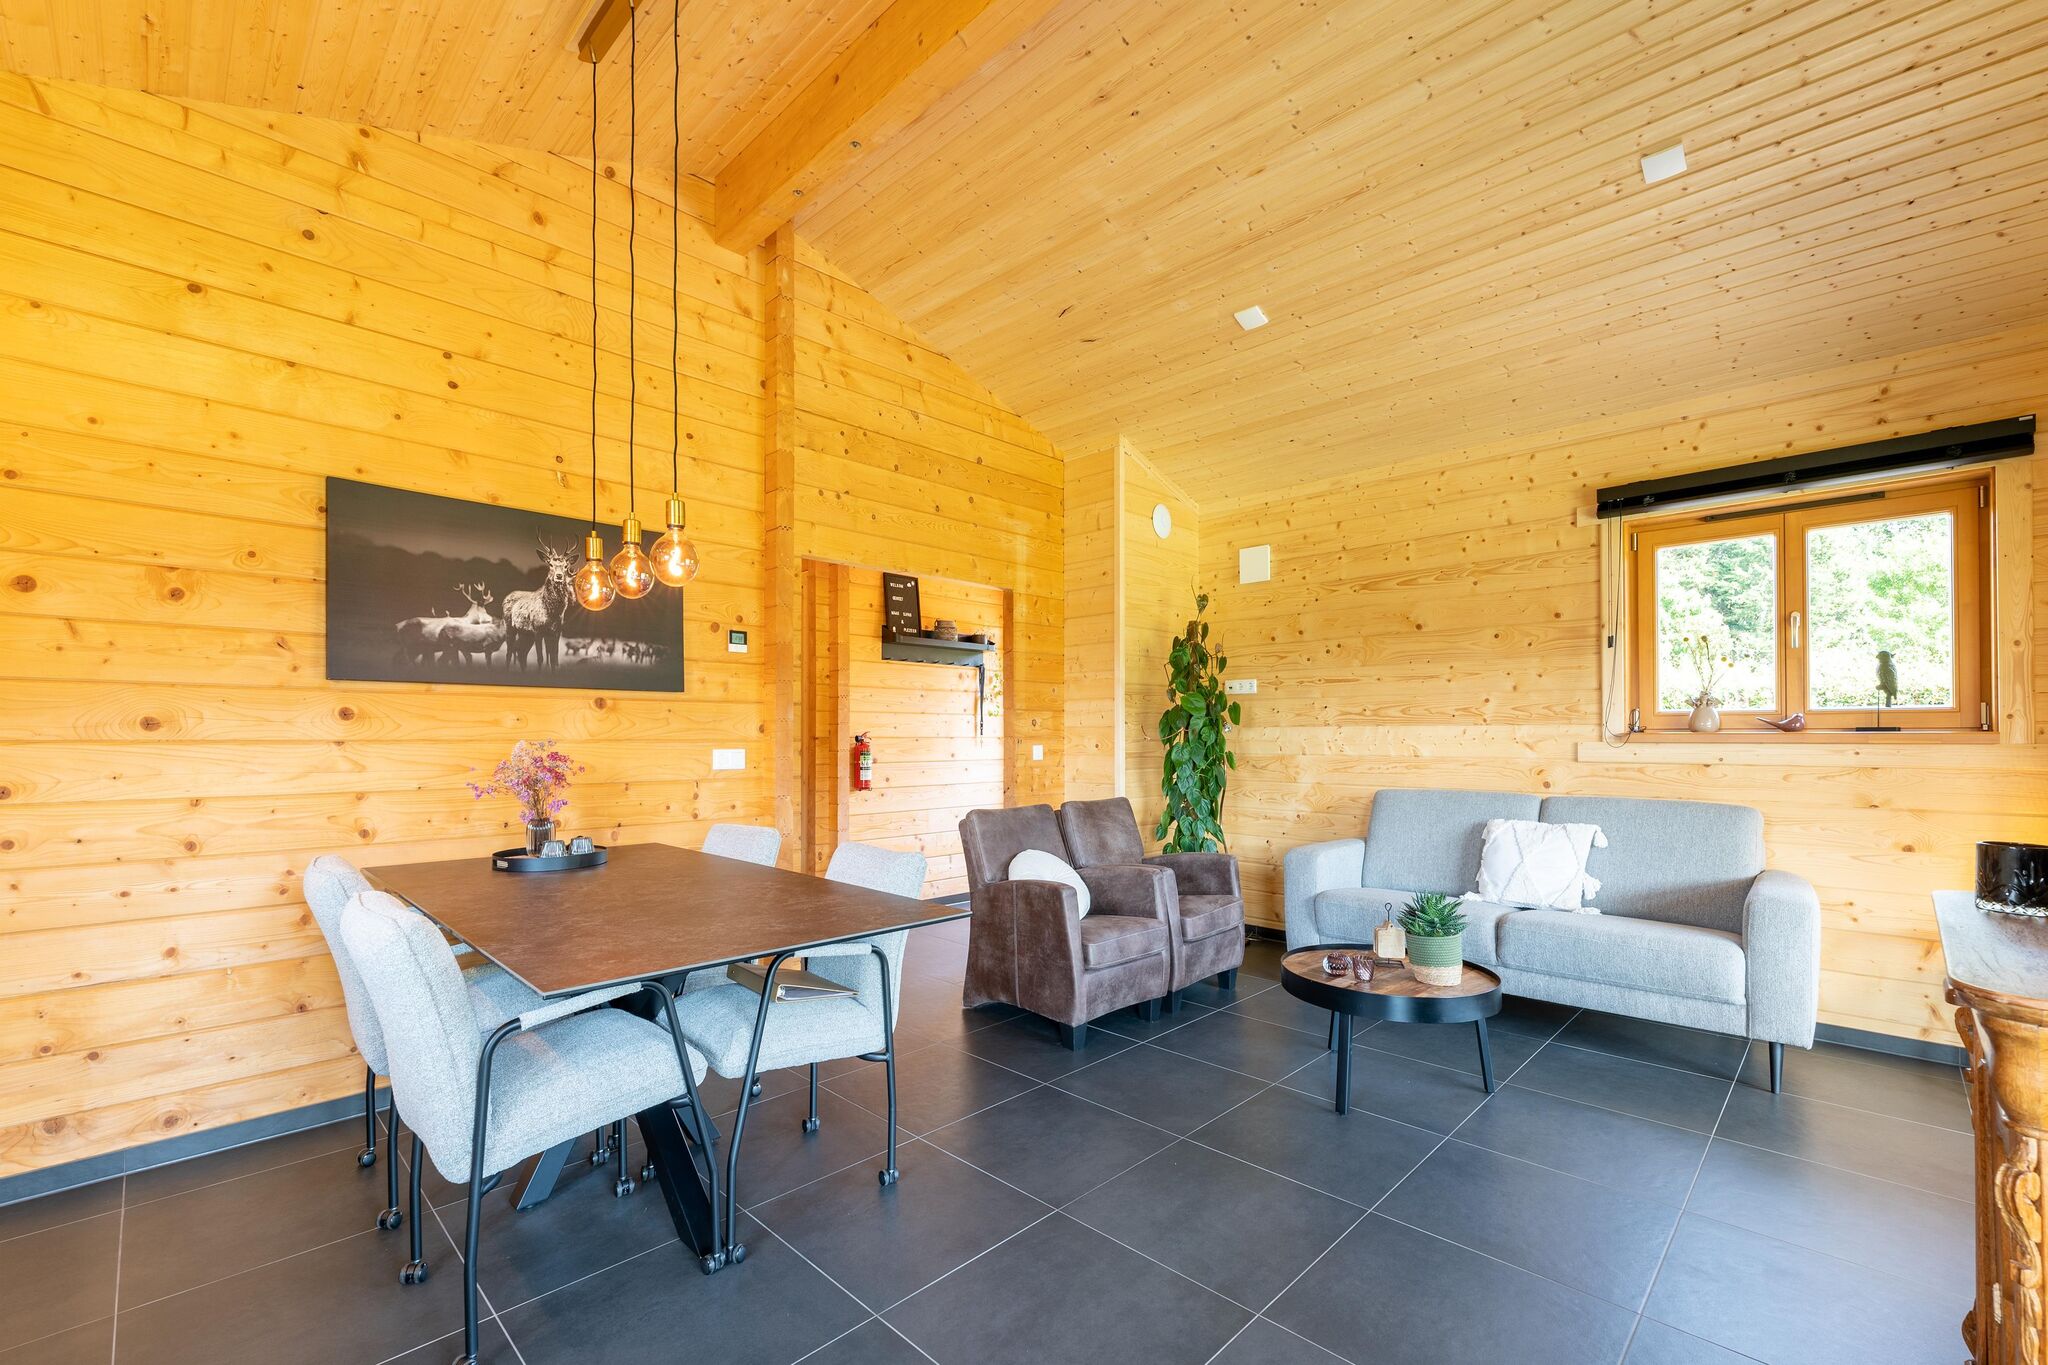 Maison de vacances confortable dans le Limbourg avec une belle vue